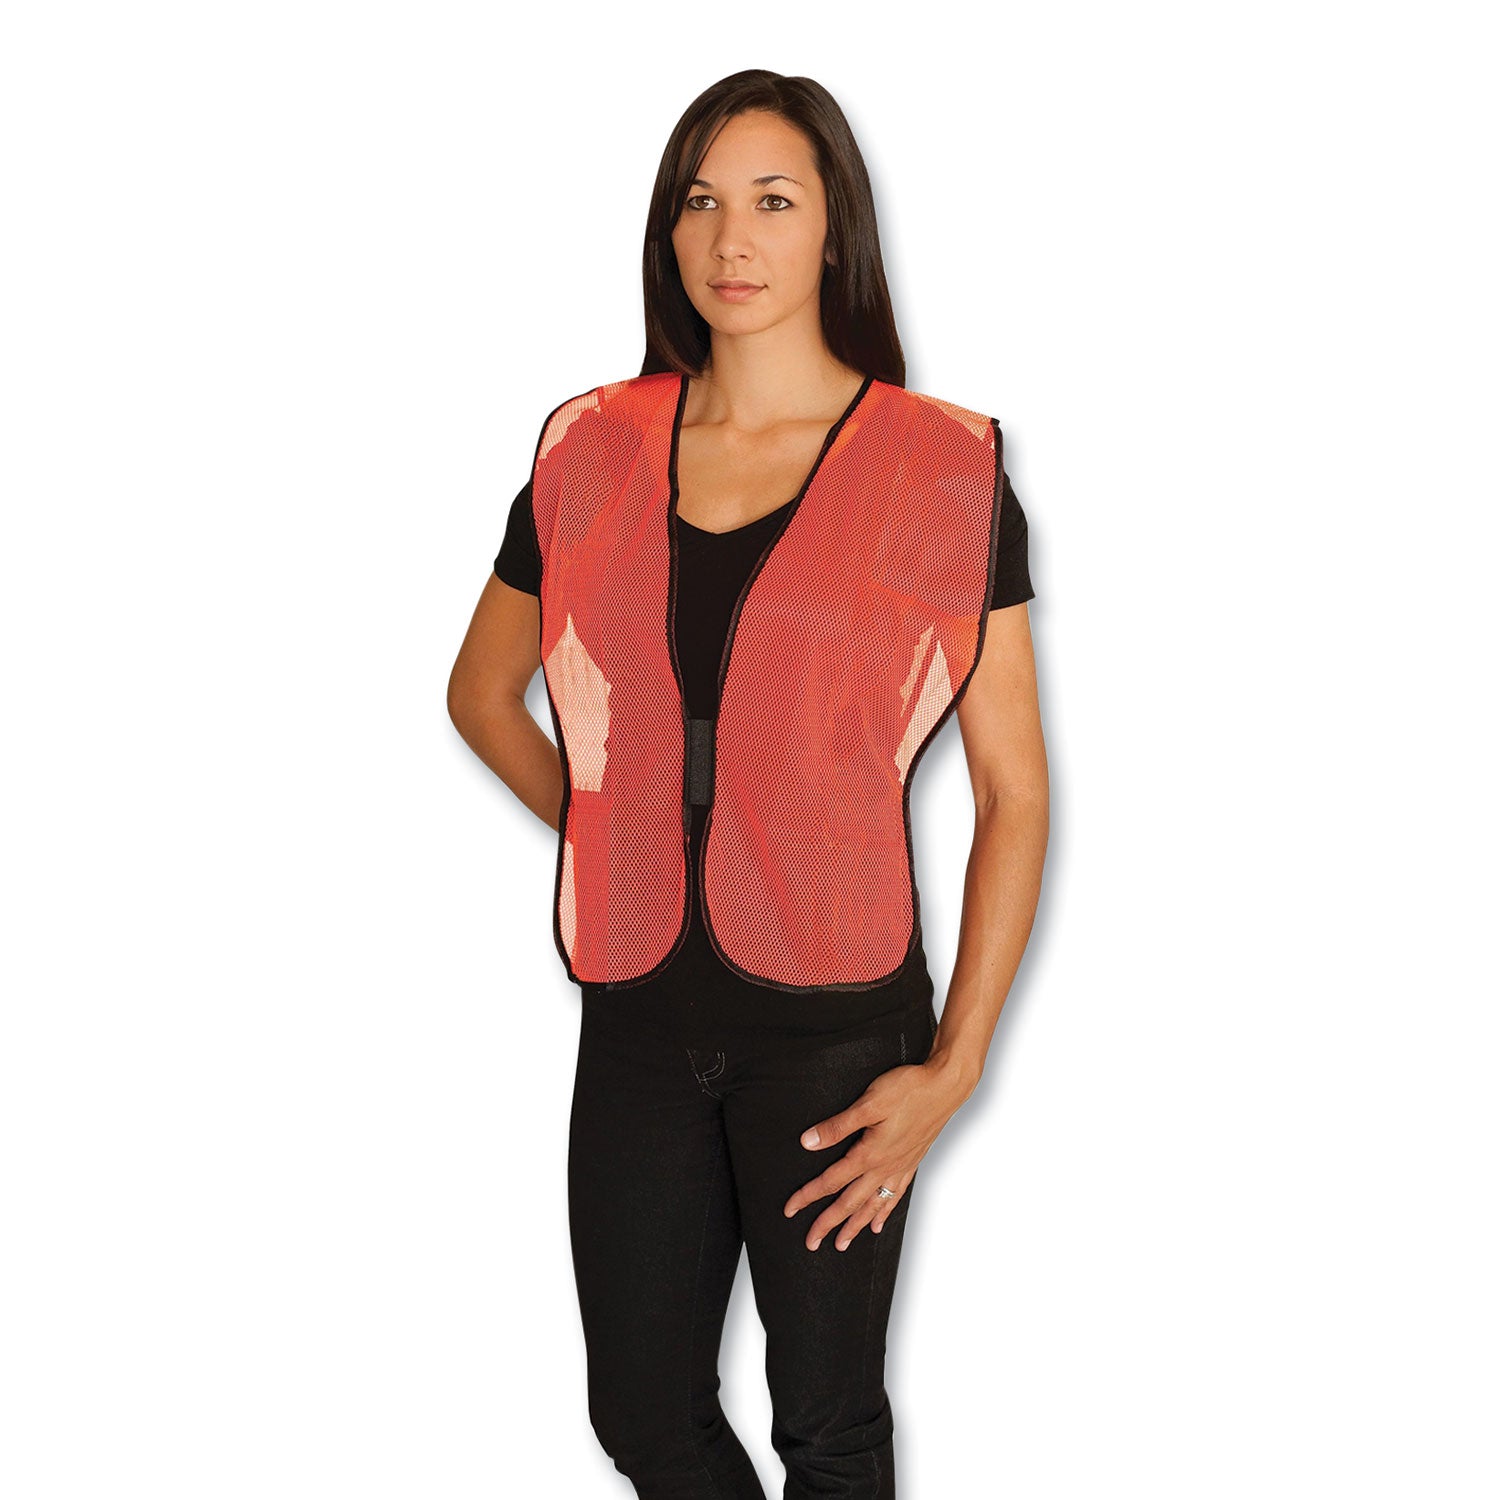 hook-and-loop-safety-vest-one-size-fits-most-hi-viz-orange_pid3000800or - 1